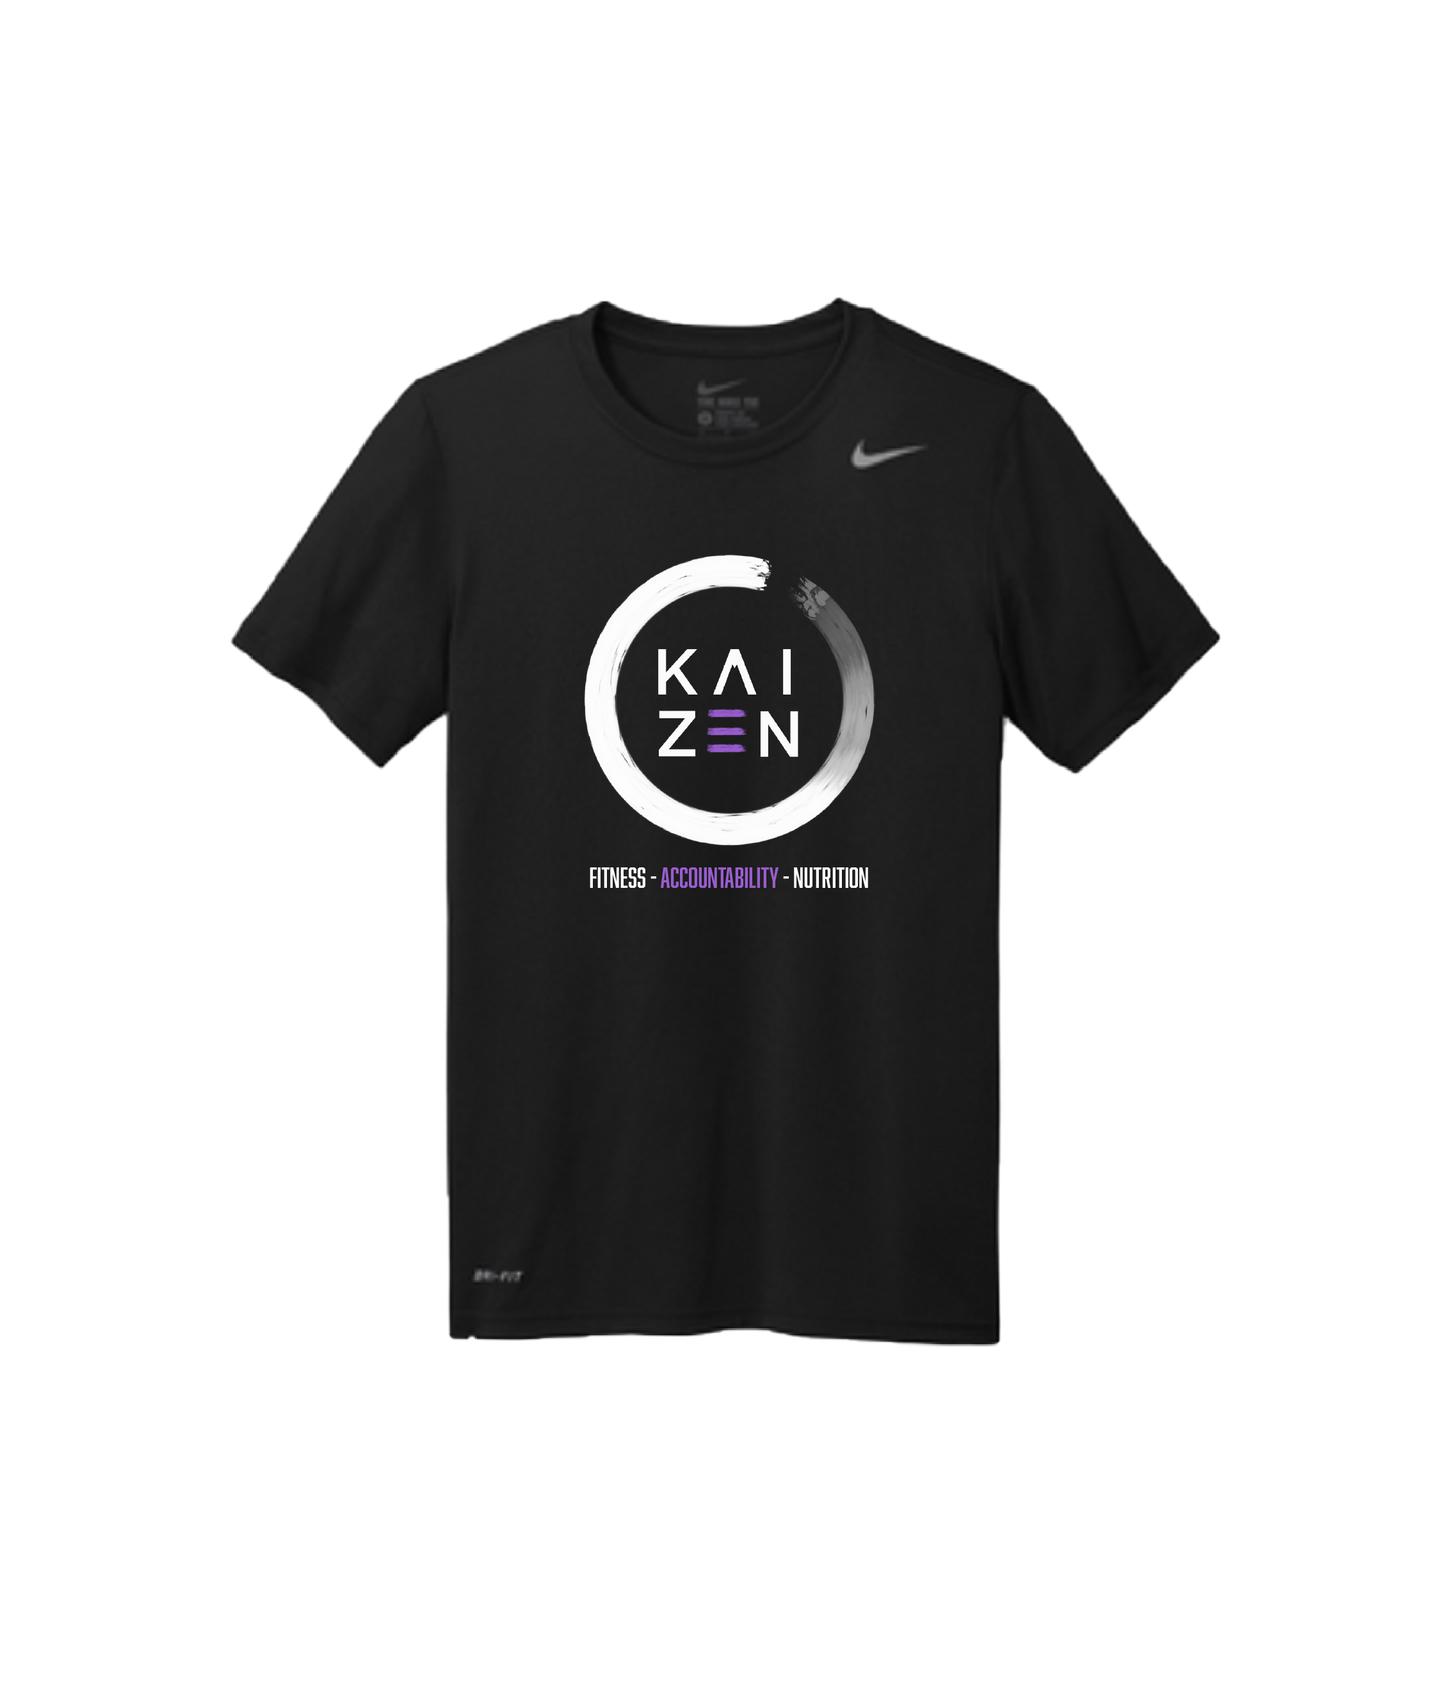 Kaizen logo shirt - Nike Teamr Legend tee